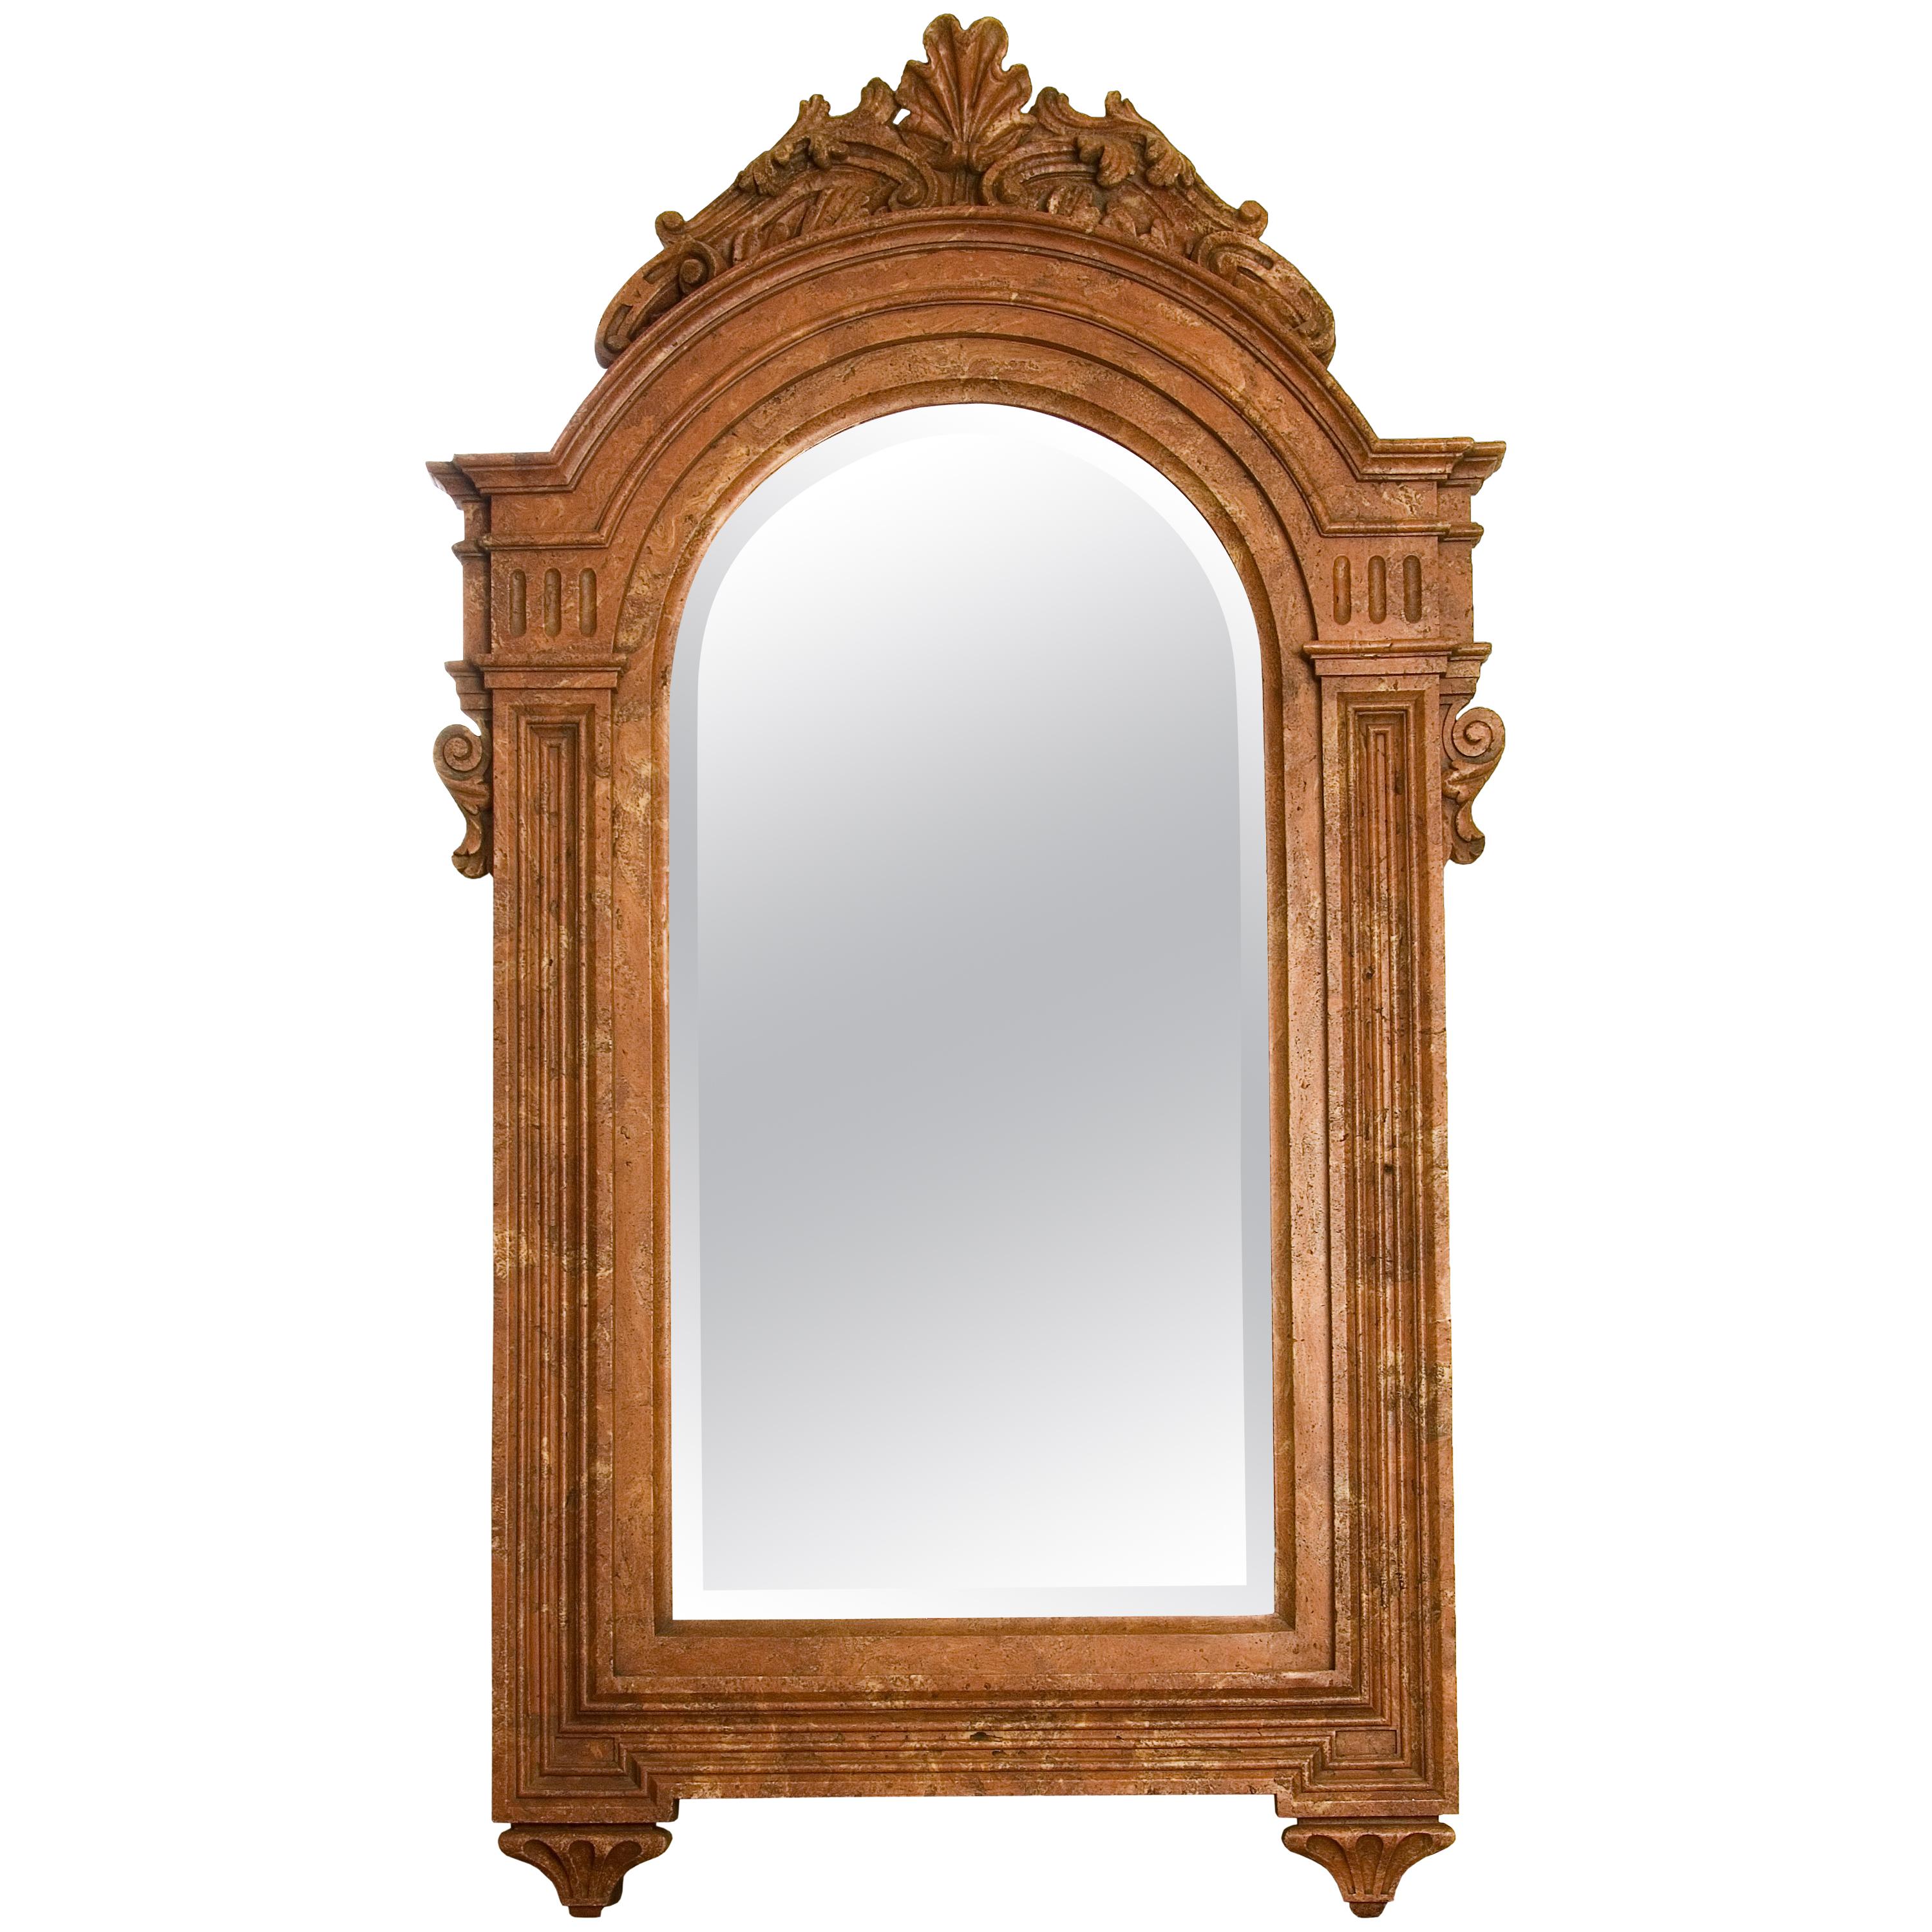 Miroir de style Renaissance, patine de marbre à poussière, XXe siècle